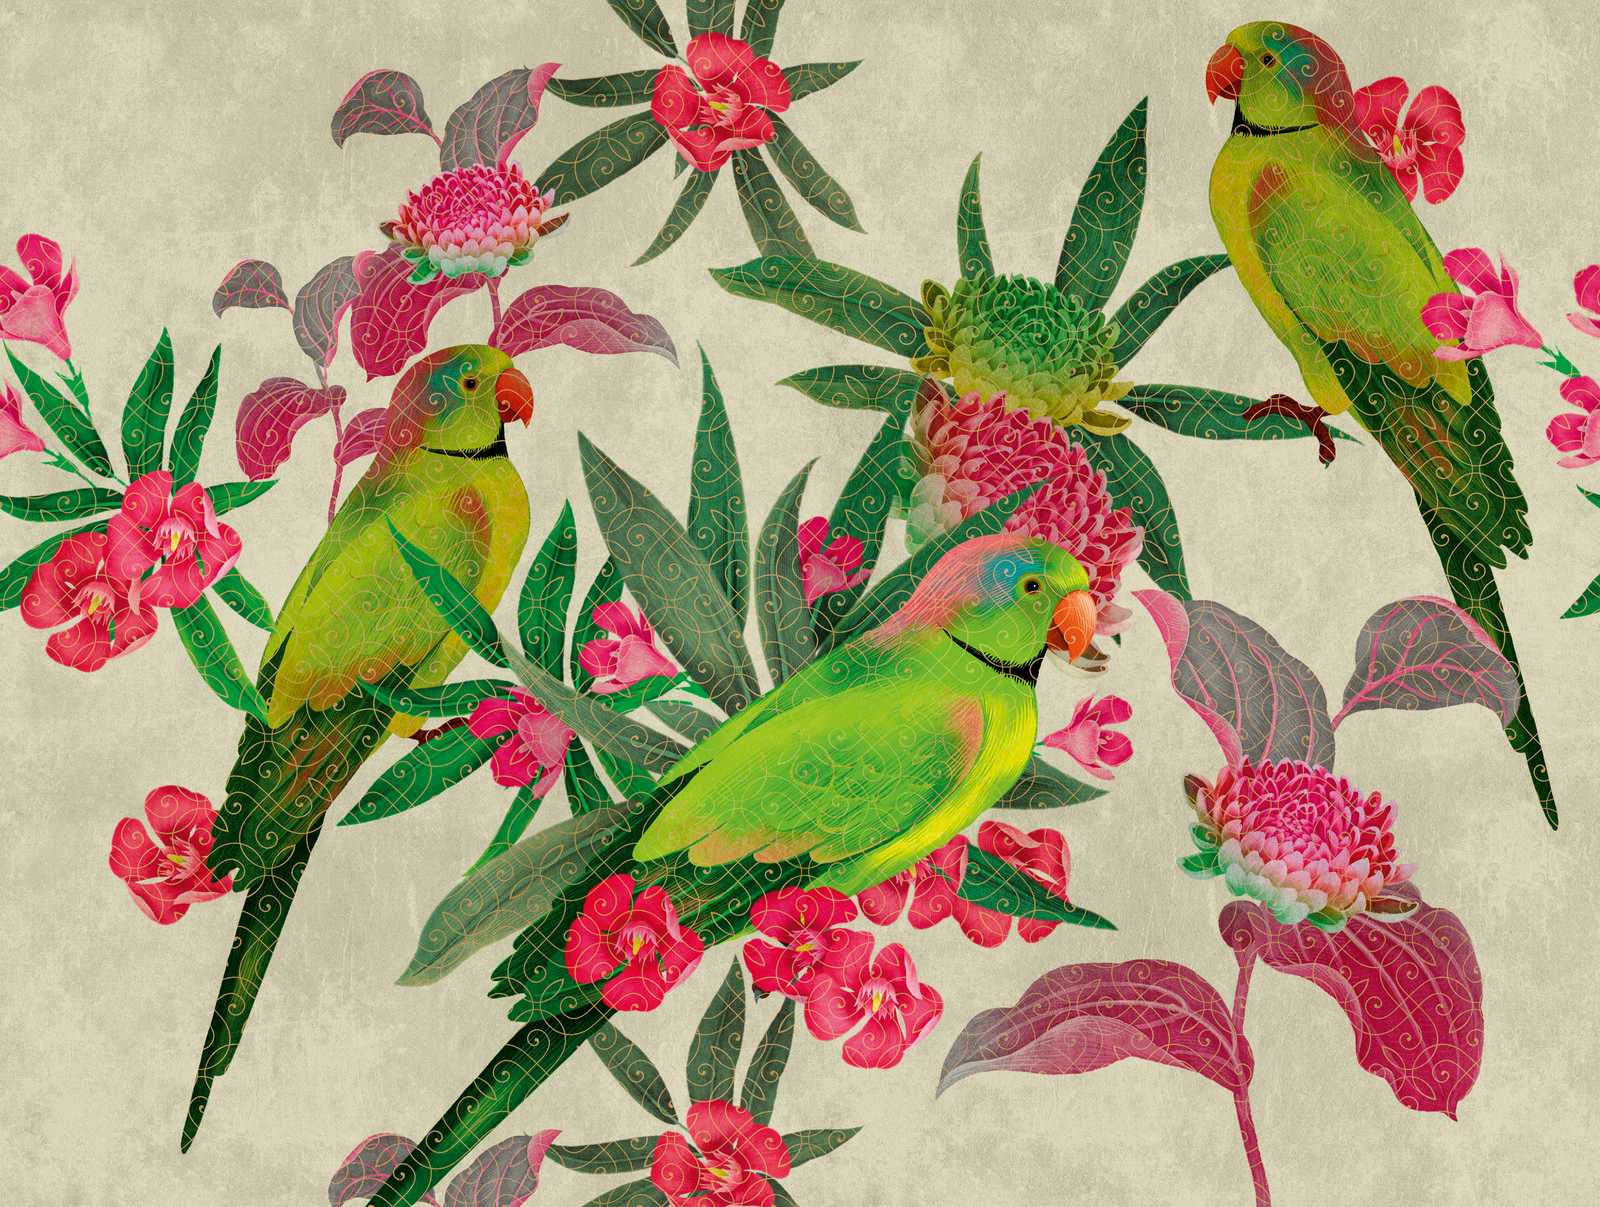             Papier peint Nouveauté | perroquets papier peint à motifs avec fleurs dans le style artistique
        